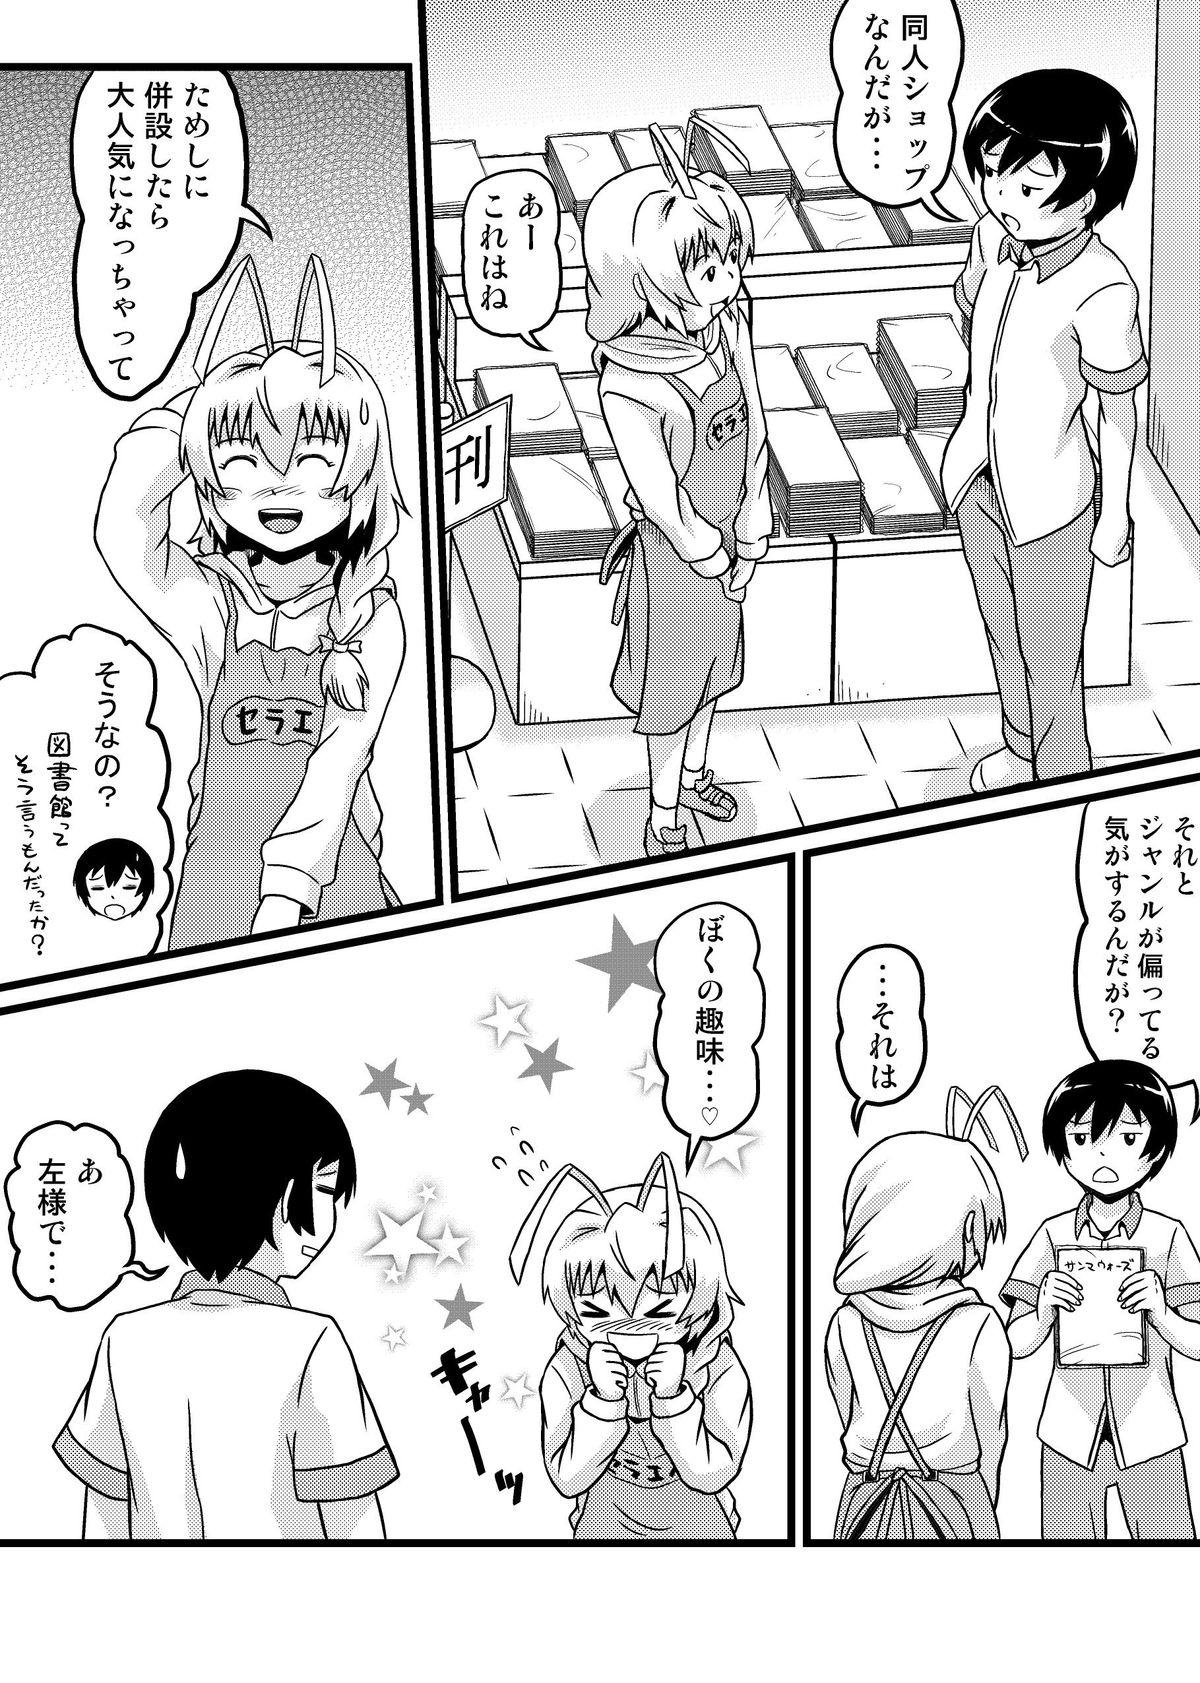 Gapes Gaping Asshole [Tsukemon-dou] Nyaruko-san no Hastur-kun Route 2 ~Celaeno e Youkoso!~ (Haiyore! Nyaruko-san!) [Digital] - Haiyore nyaruko-san Storyline - Page 12